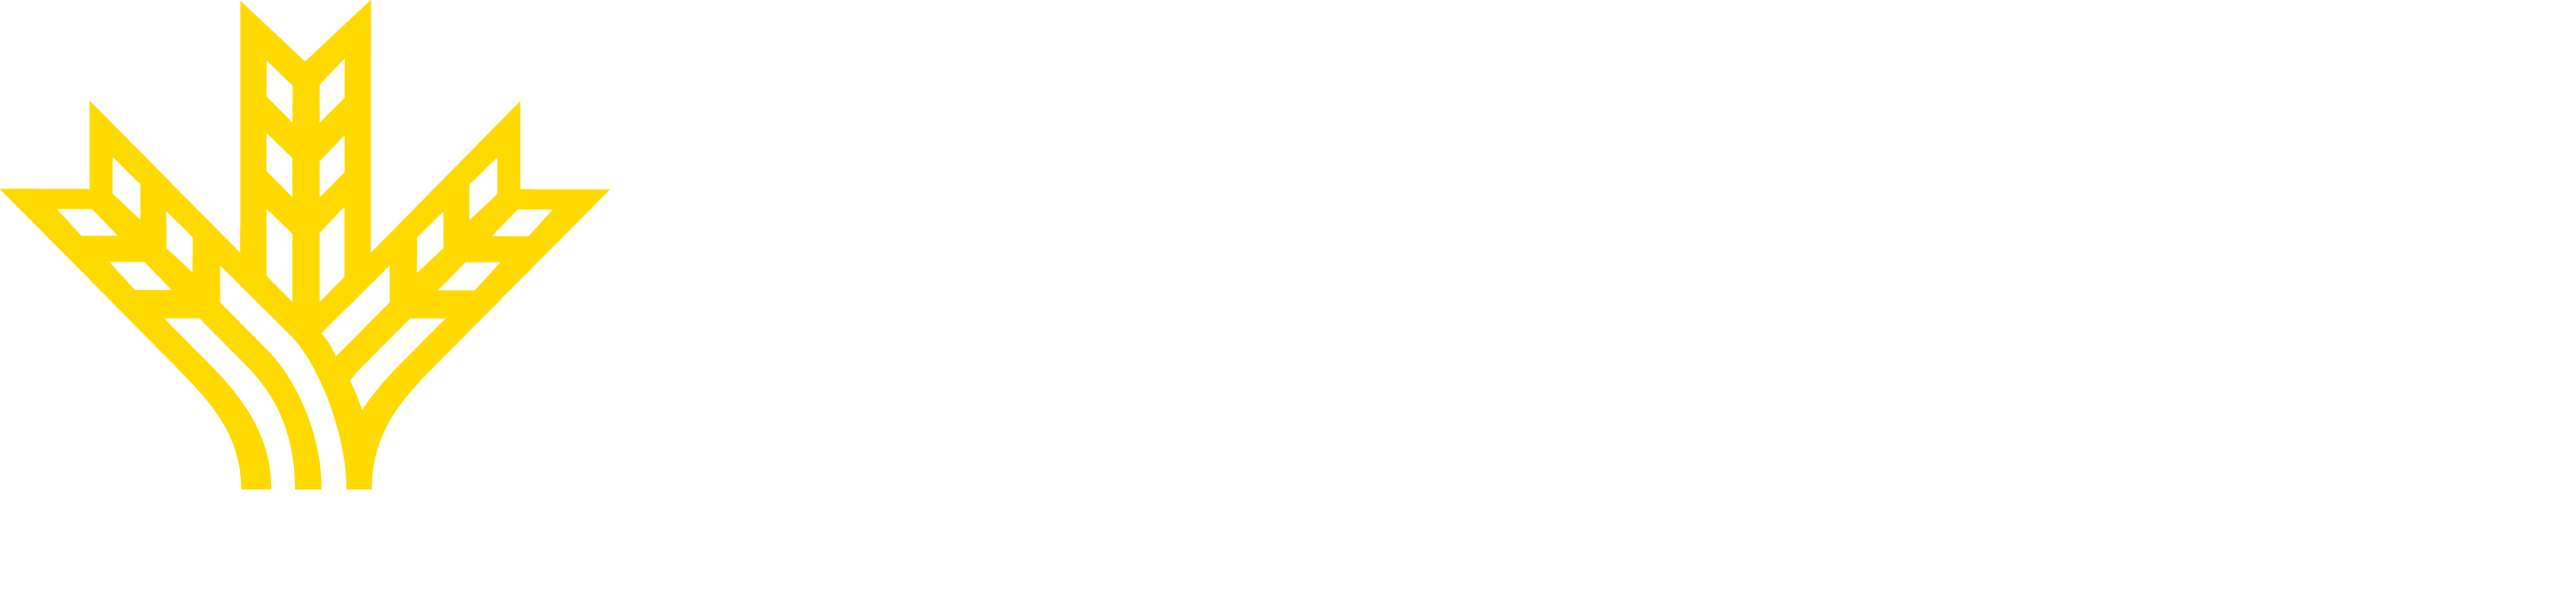 Logo_rectangular_blanco_fondo_transparente